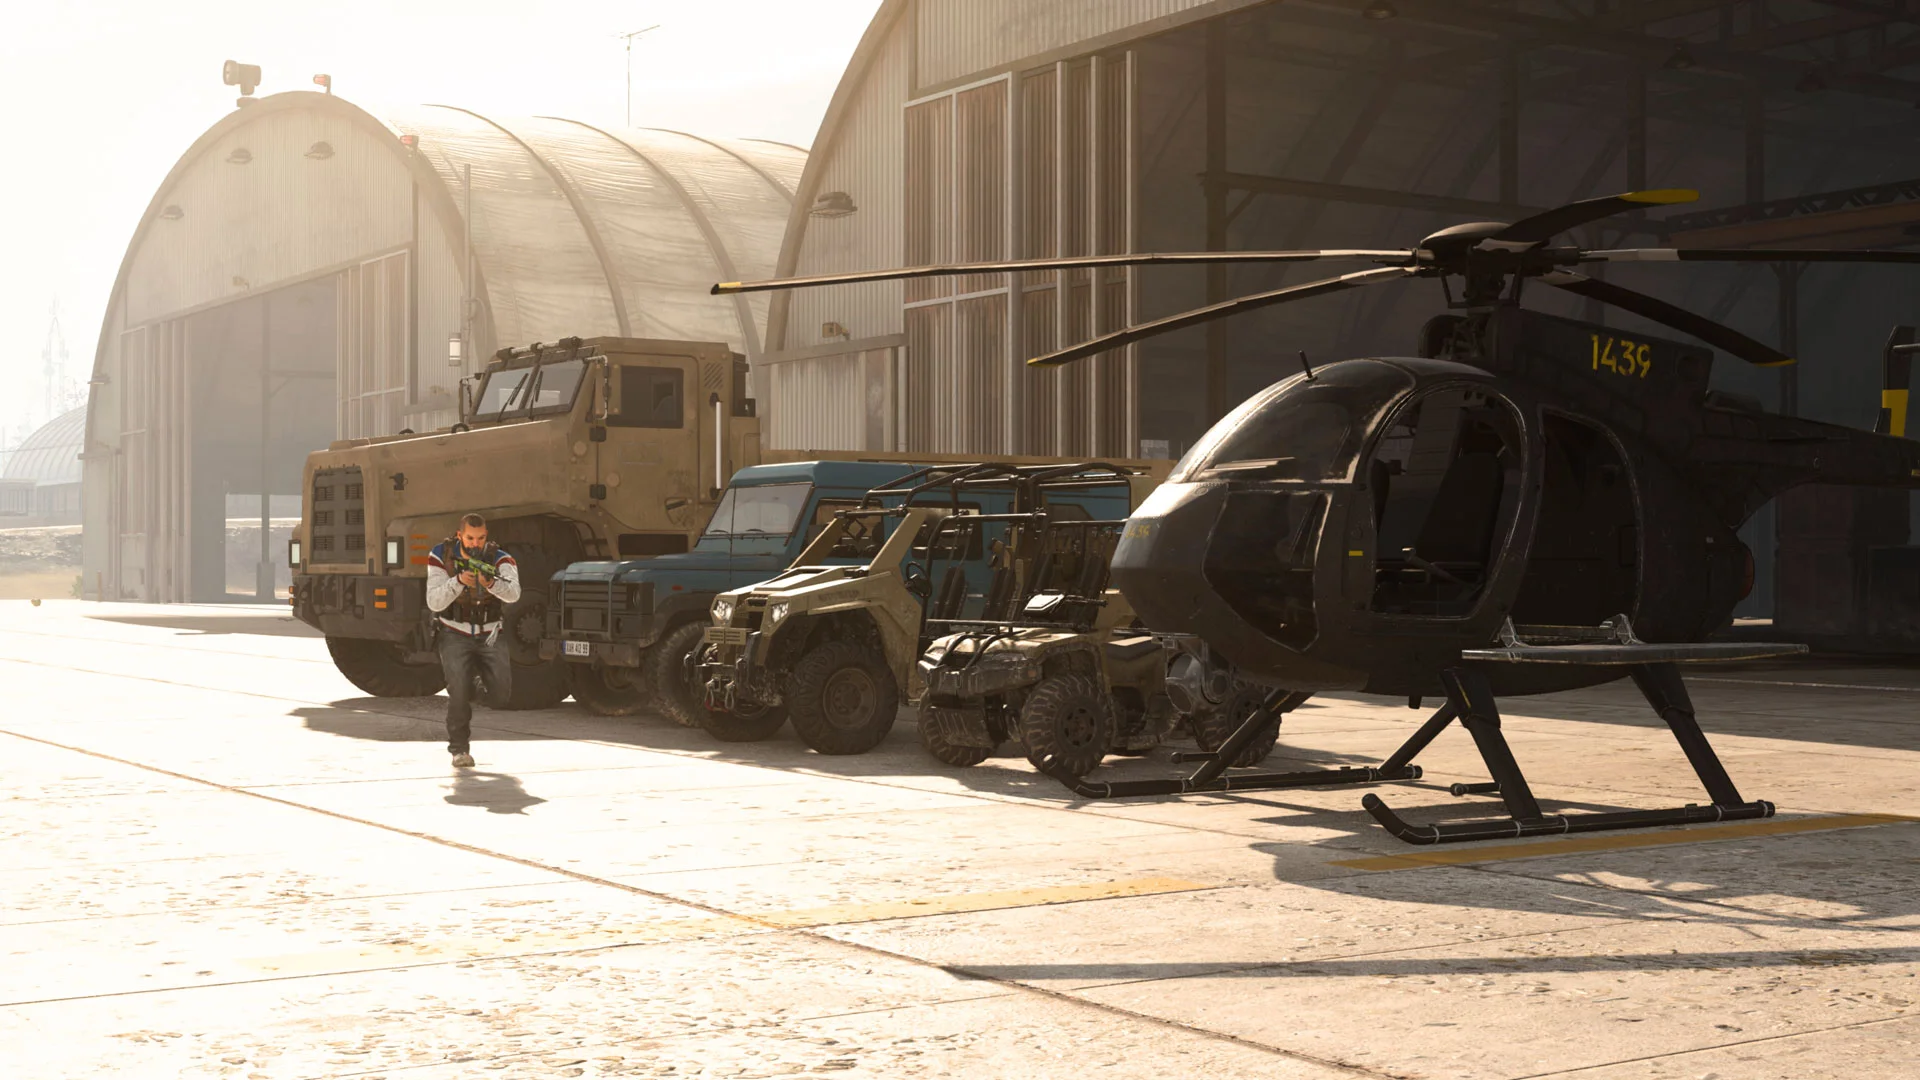 Call of Duty: Warzone вышла 10 марта, преодолела отметку в 60 миллионов игроков меньше чем за два месяца и, похоже, не планирует сбавлять обороты. Чтобы помочь новым игрокам, Activision выпустила подробное руководство по игре. Мы изучили его, сравнили с тактиками, которые выработали игроки, и собрали для вас самые полезные советы. В этом гайде речь пойдет о том, как максимально эффективно пользоваться транспортом.